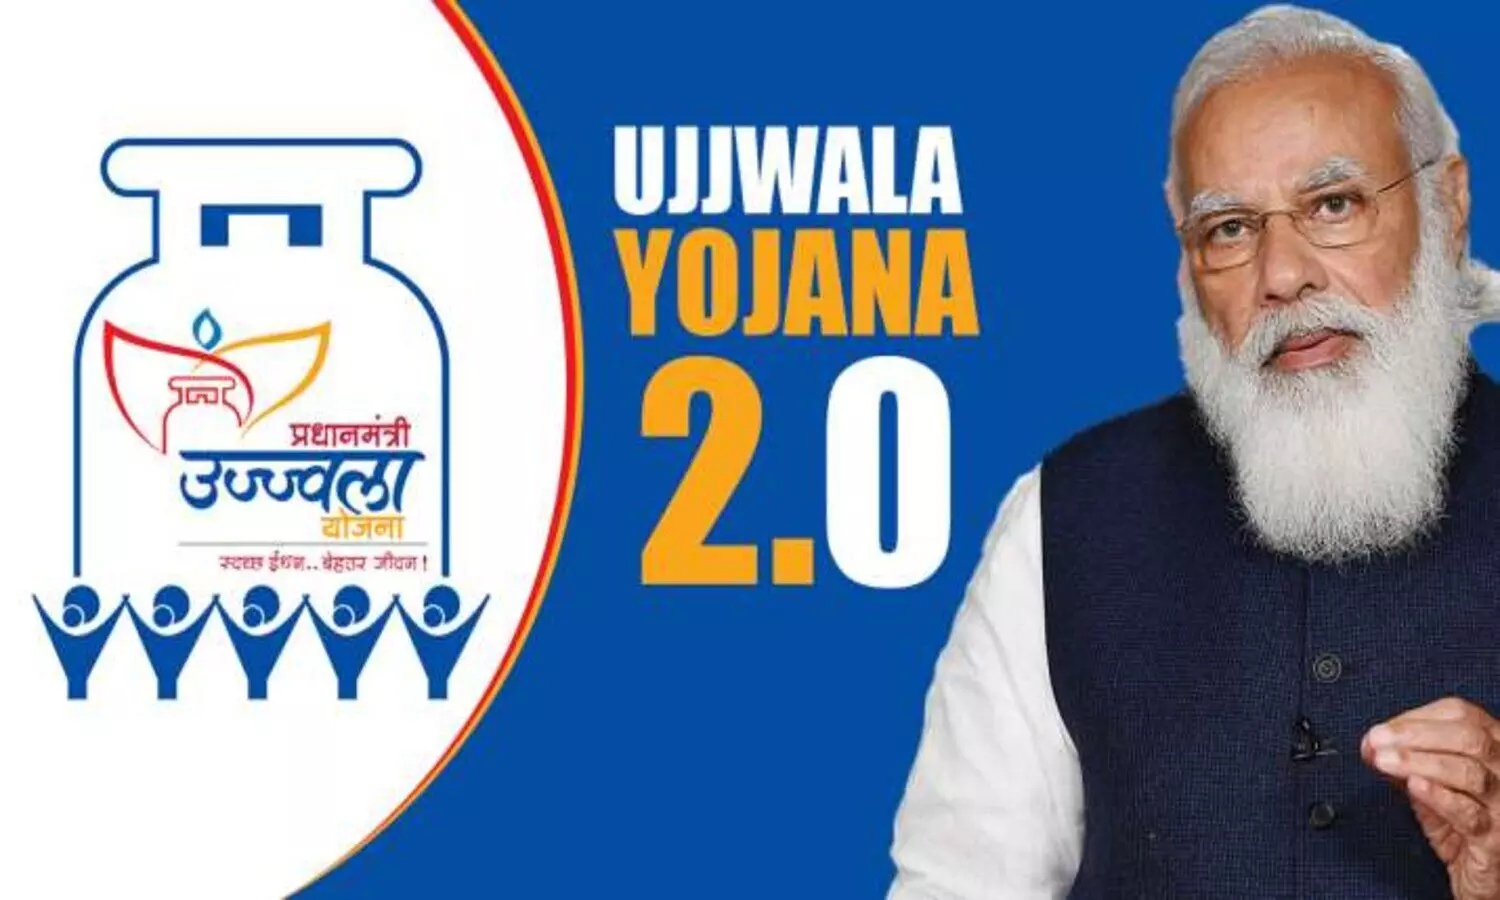 Ujjwala Yojana 2.0 by pm modi